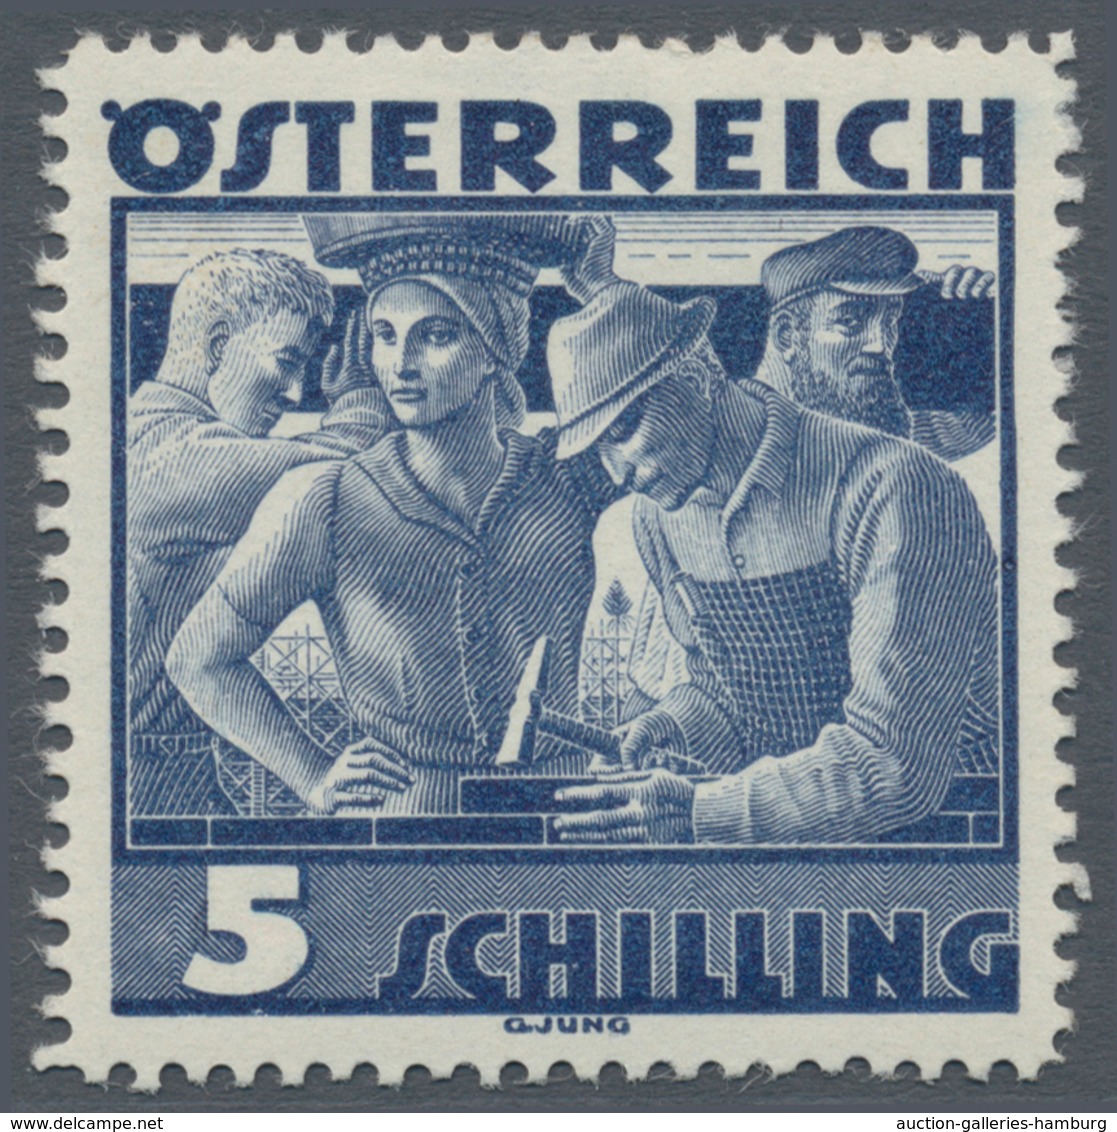 Österreich: 1934, Freimarken "Trachten", 5 Sch. "Städtische Arbeit", Sechs Gezähnte Buchdruck-Probed - Ongebruikt